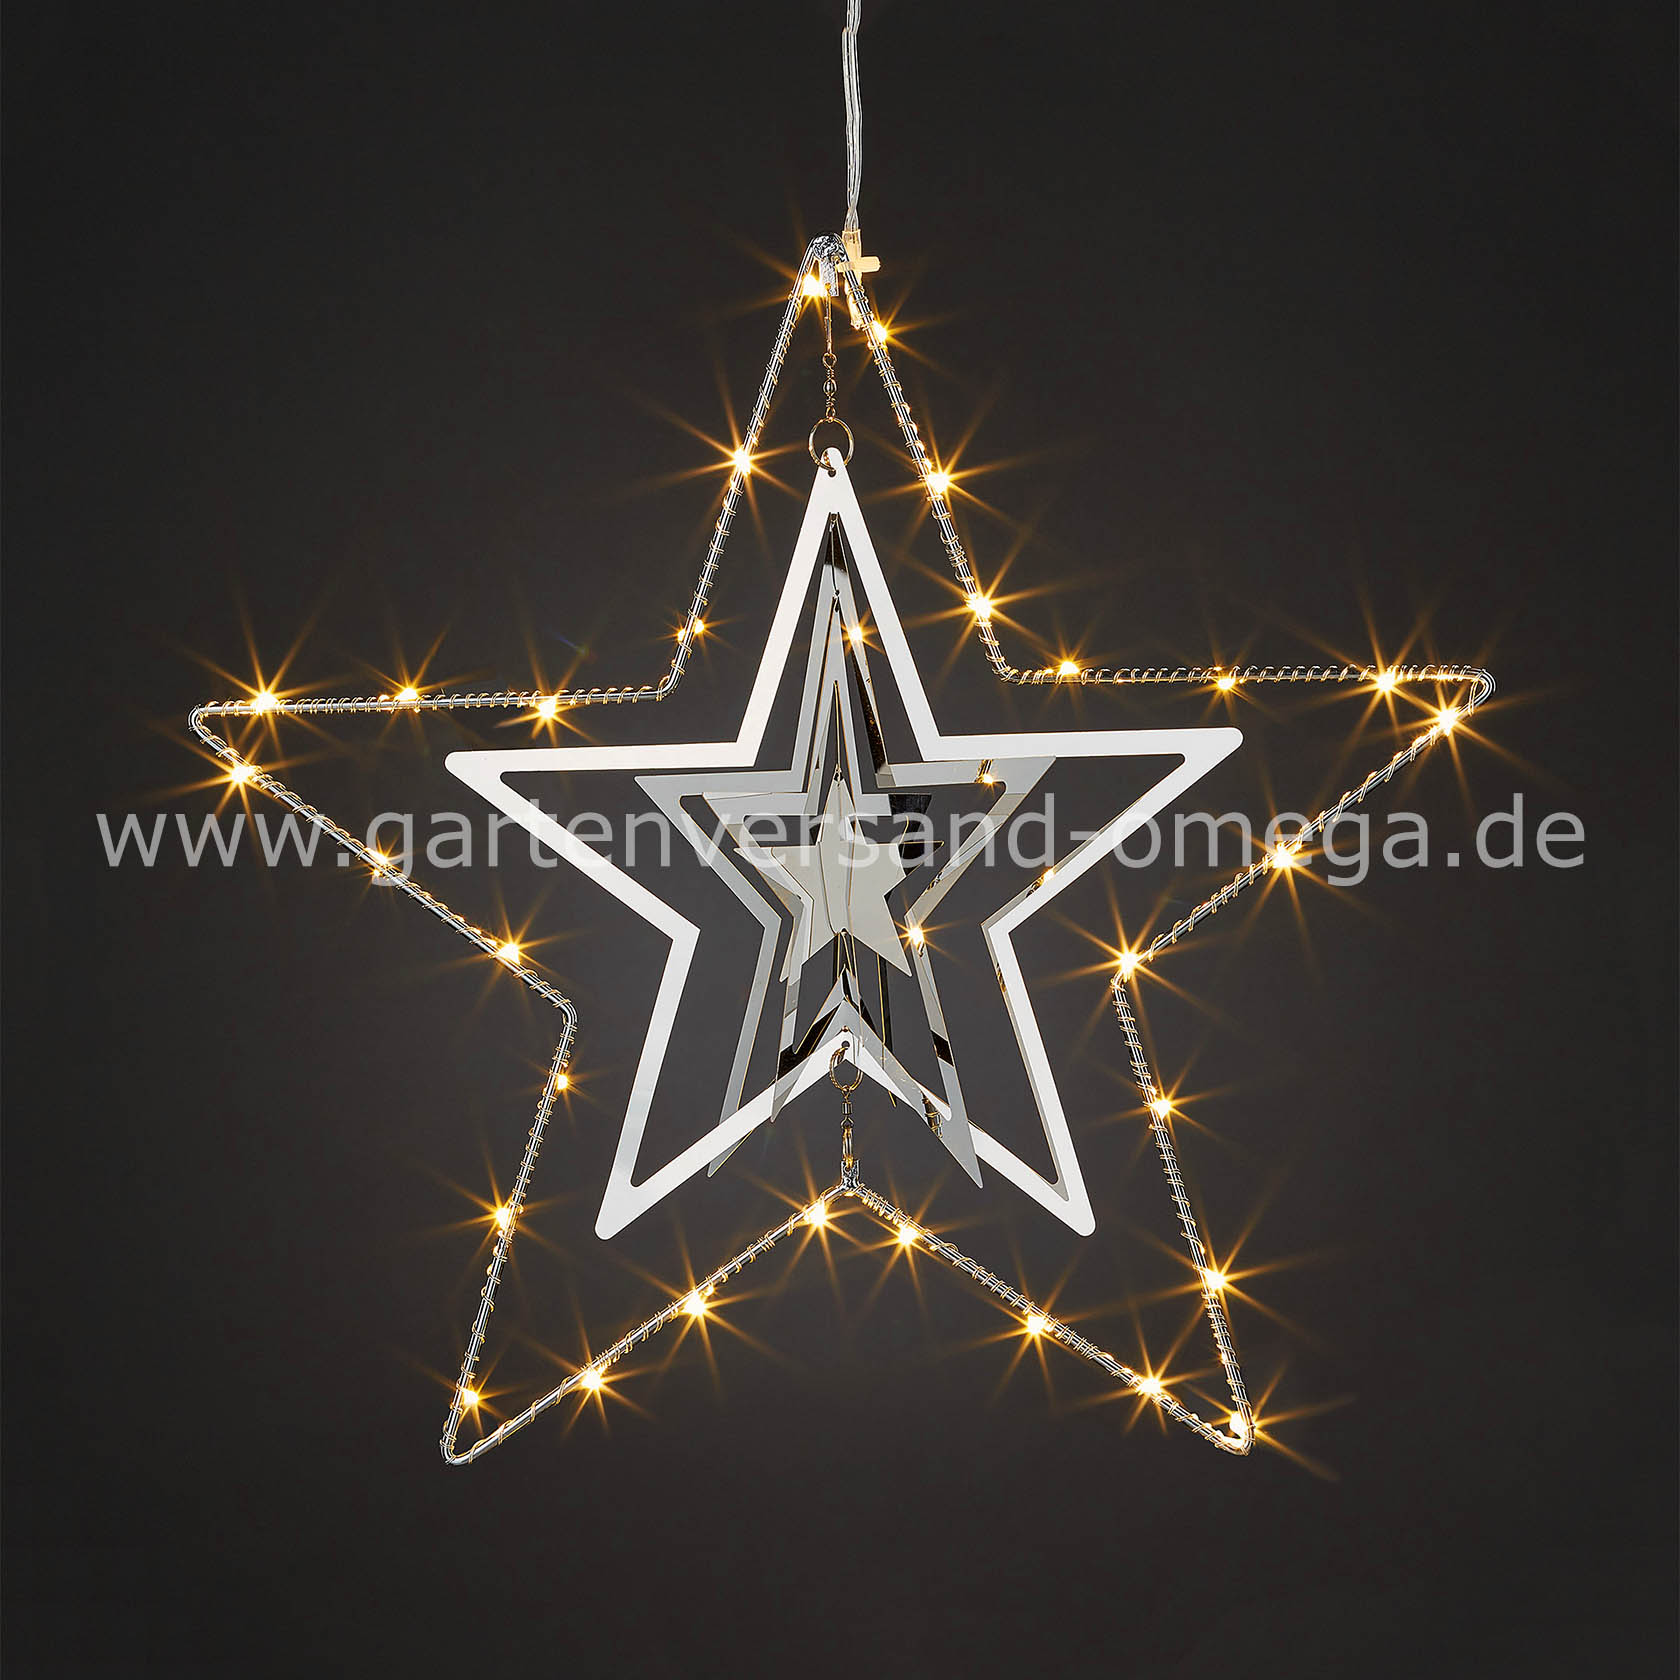 Weihnachtsdeko für Metall-Stern Stern Weihnachtsstern, zum Weihnachtsbeleuchtung beleuchtet, Deko-Weihnachtsstern 3D LED LED-Stern, Hängen, Innen, aus LED-Mobilee, Weihnachtsbeleuchtung Metall, Stern-Mobilee, -